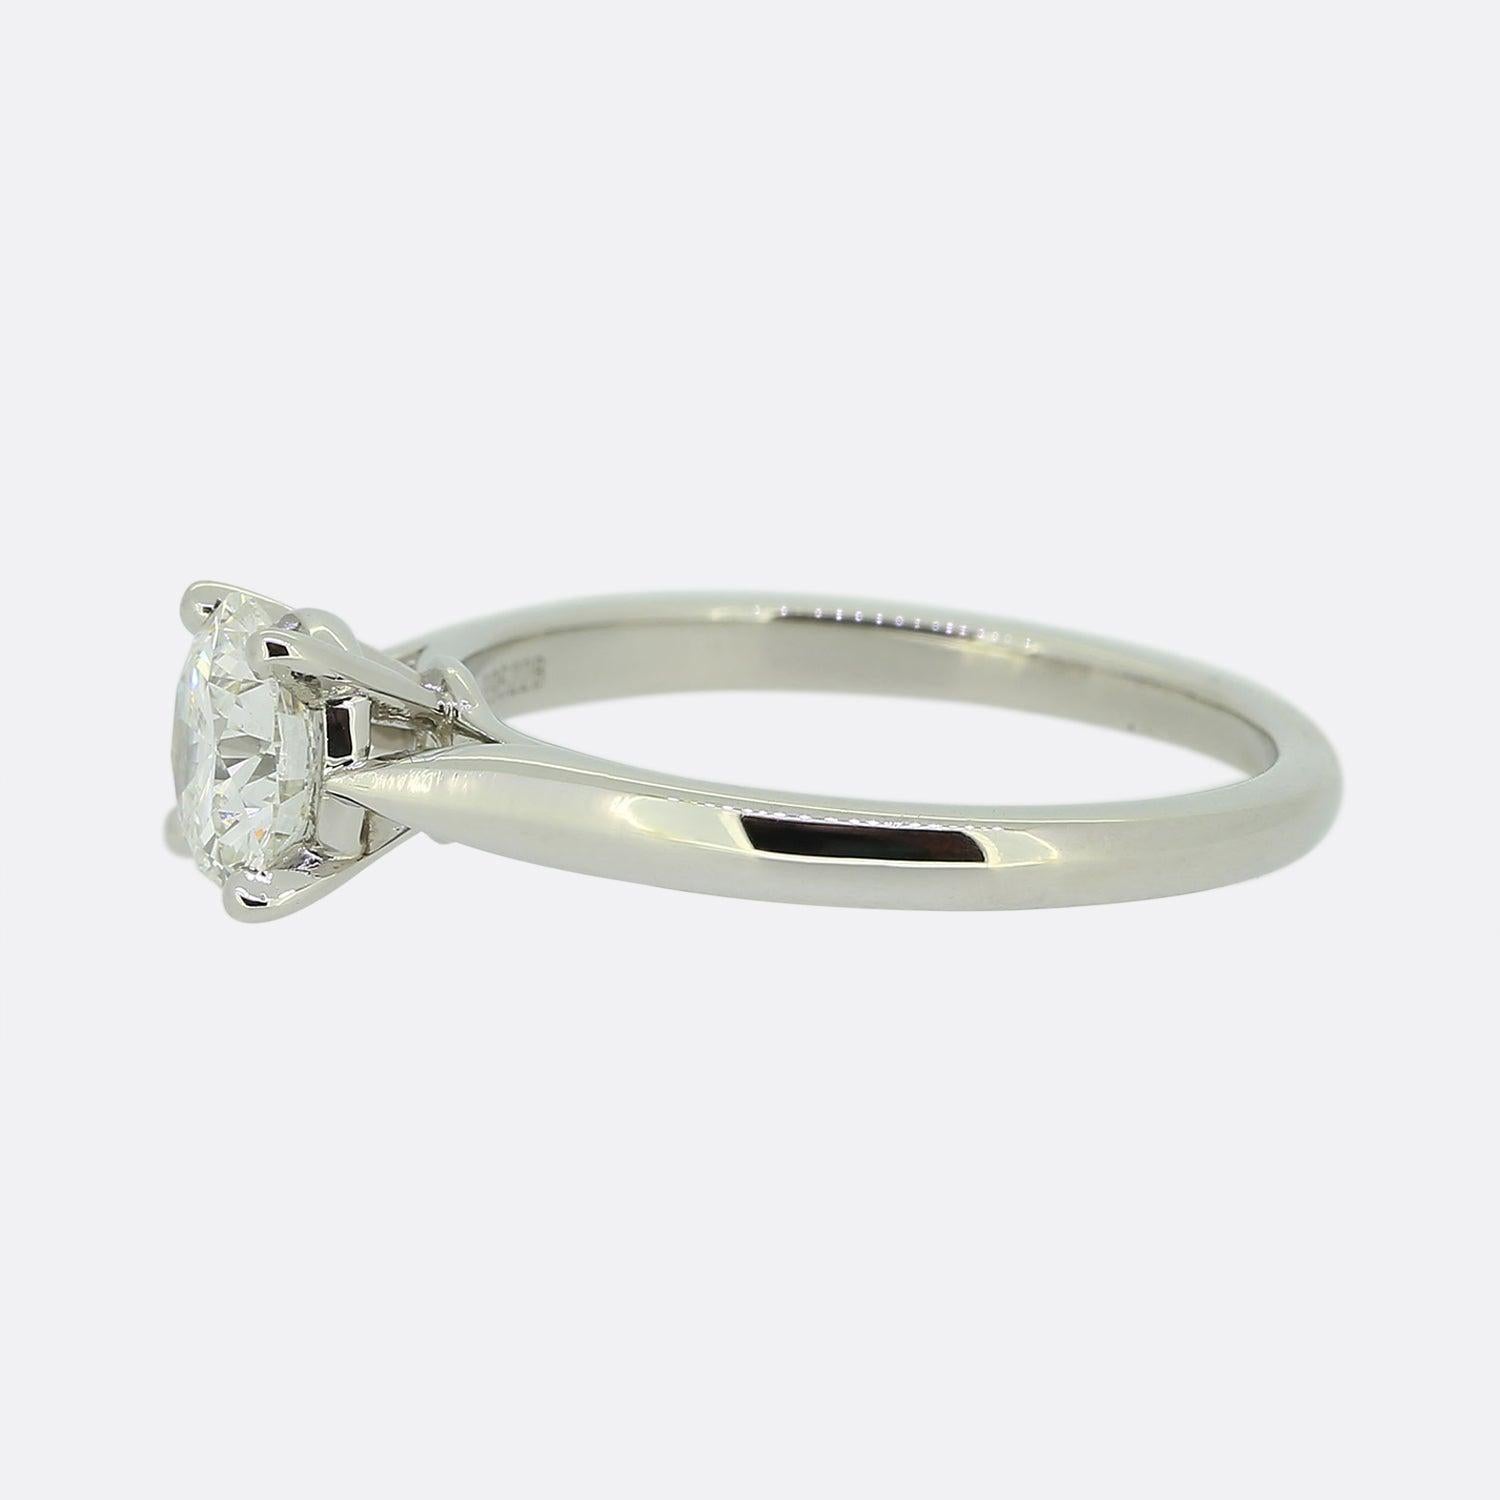 Hier haben wir einen klassischen diamantenen Solitär-Verlobungsring aus dem weltbekannten Schmuckhaus Cartier. Ein sensationeller runder Diamant im Brillantschliff von 1,02 Karat sitzt allein und stolz in einer Vier-Krallen-Fassung auf einem